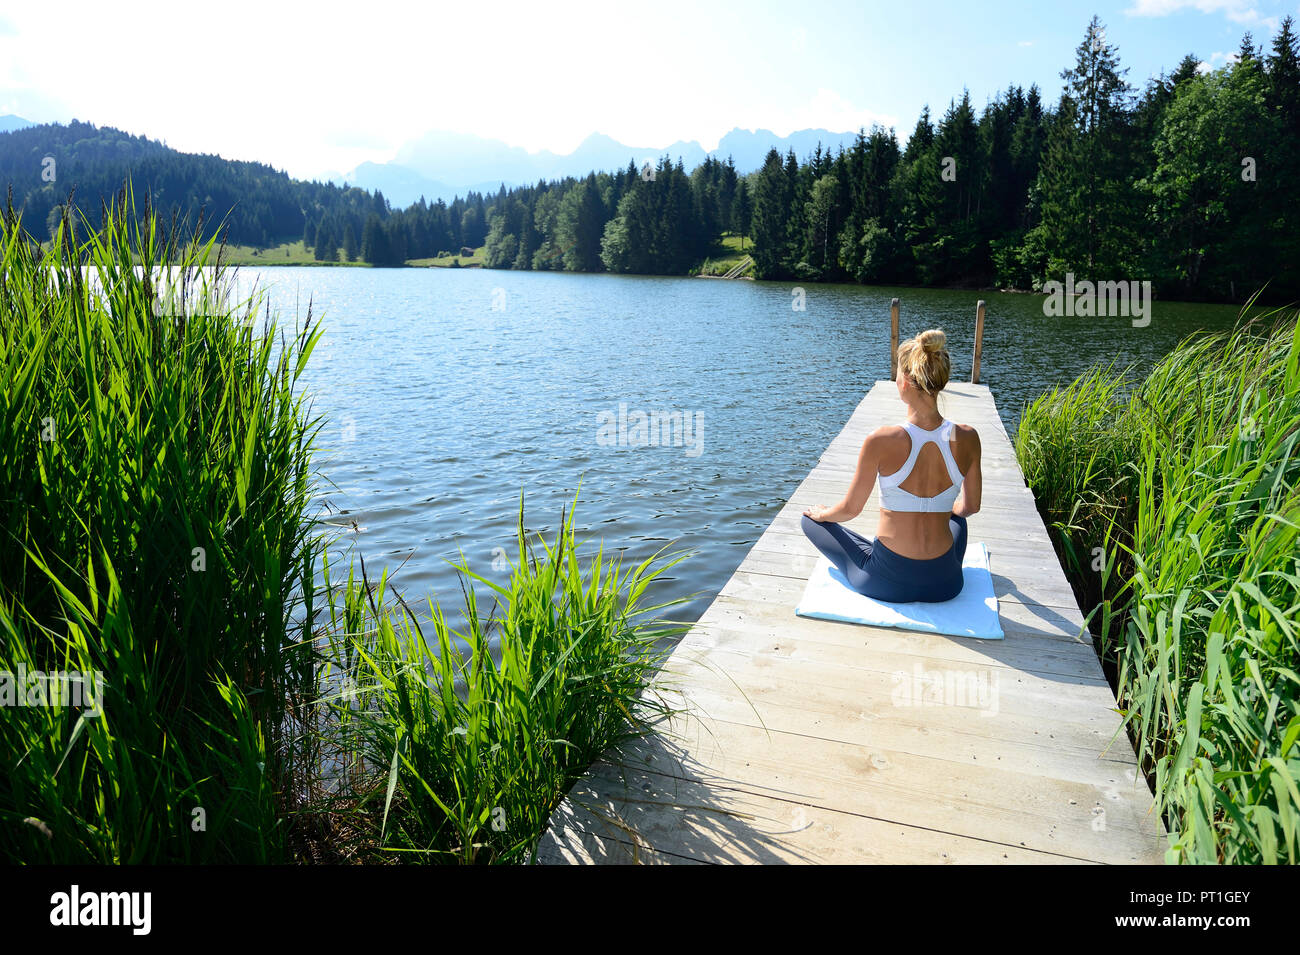 Alemania, Mittenwald, vista posterior de la mujer practicando yoga en el embarcadero del lago Foto de stock